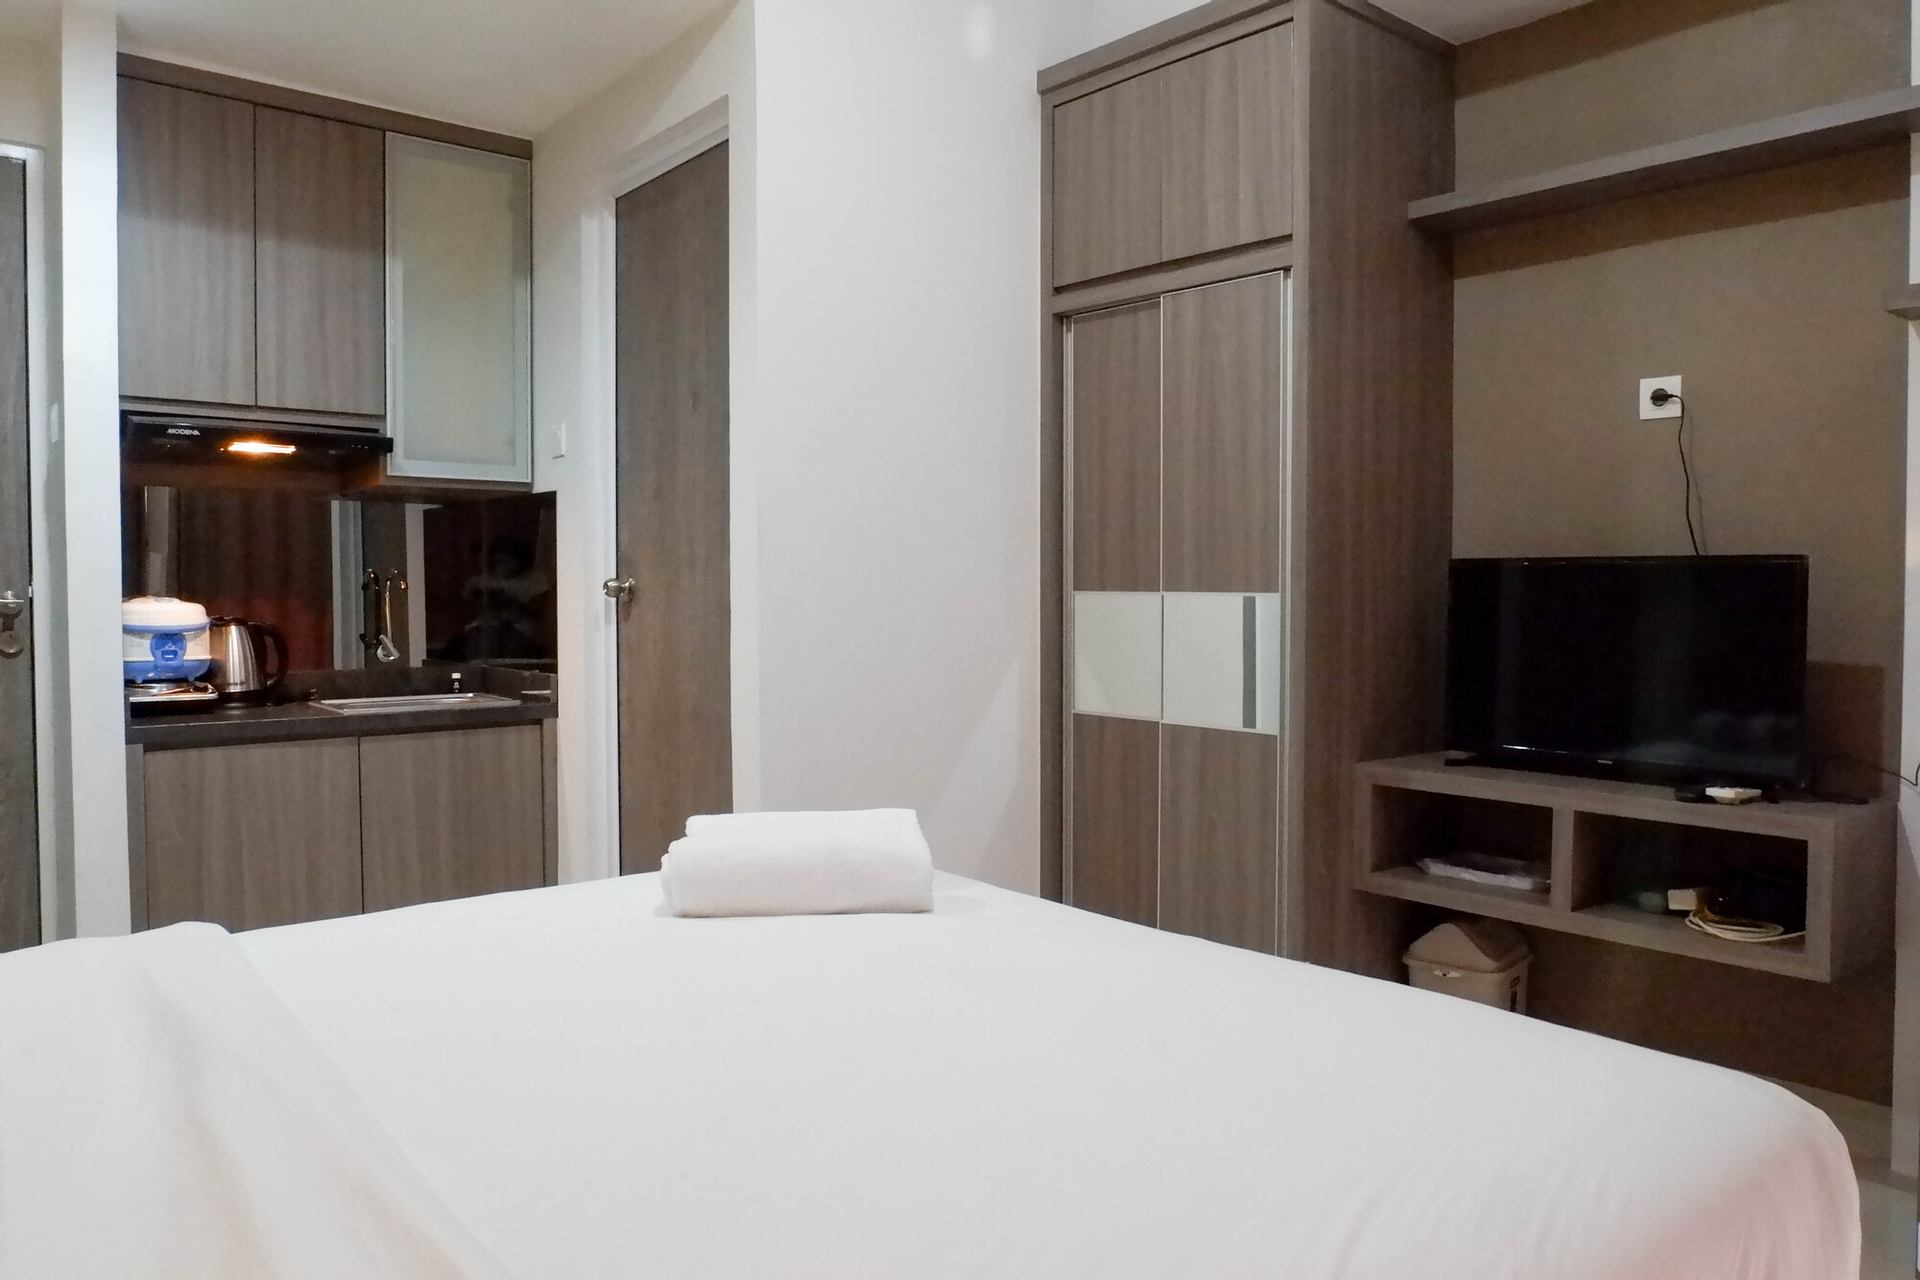 Bedroom 2, Modern and Best View Studio Apartment at Taman Melati Surabaya By Travelio, Surabaya